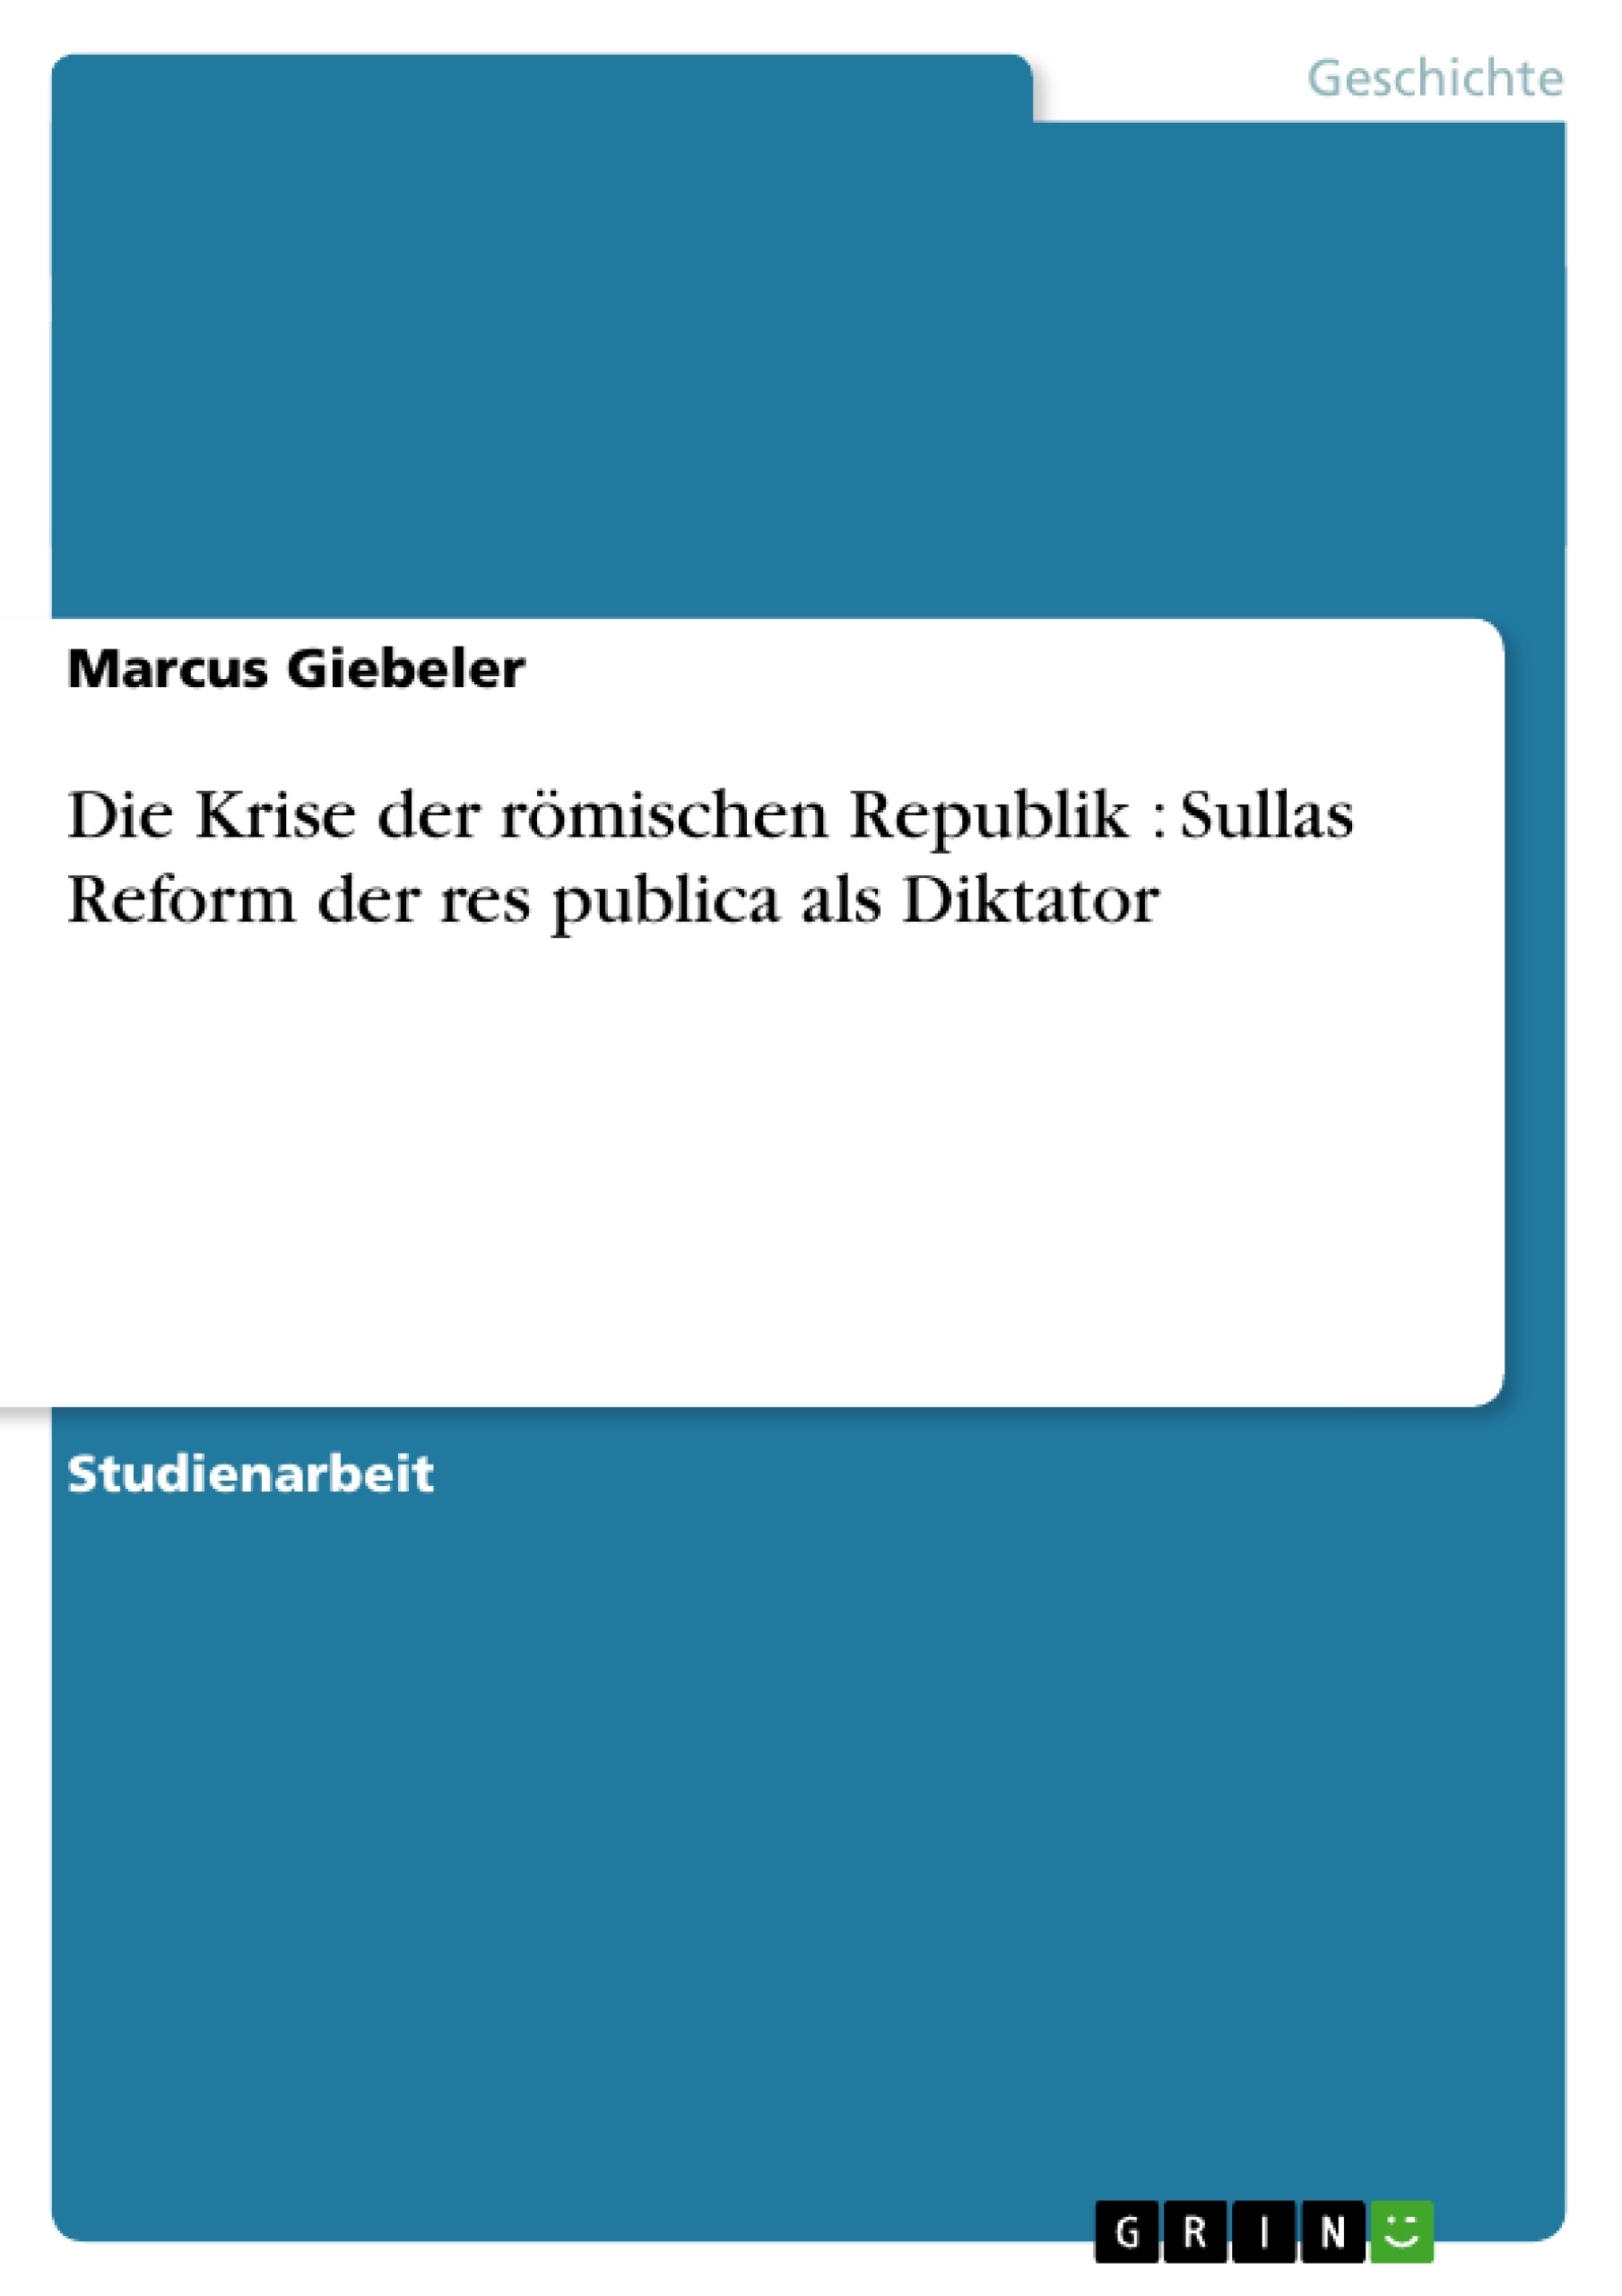 Title: Die Krise der römischen Republik : Sullas Reform der res publica als Diktator